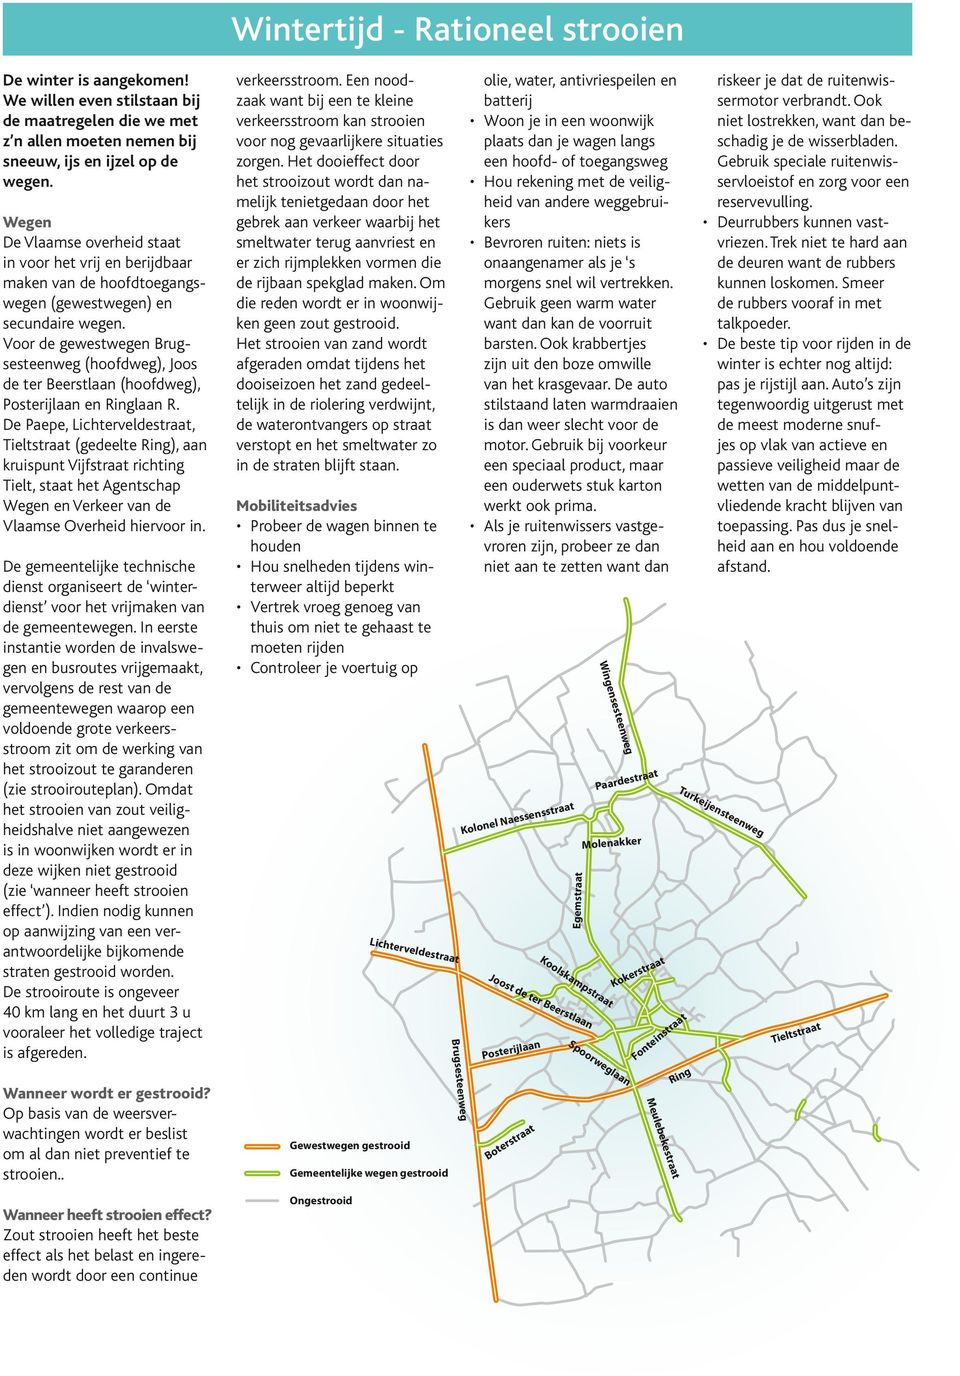 Voor de gewestwegen Brugsesteenweg (hoofdweg), Joos de ter Beerstlaan (hoofdweg), Posterijlaan en Ringlaan R.